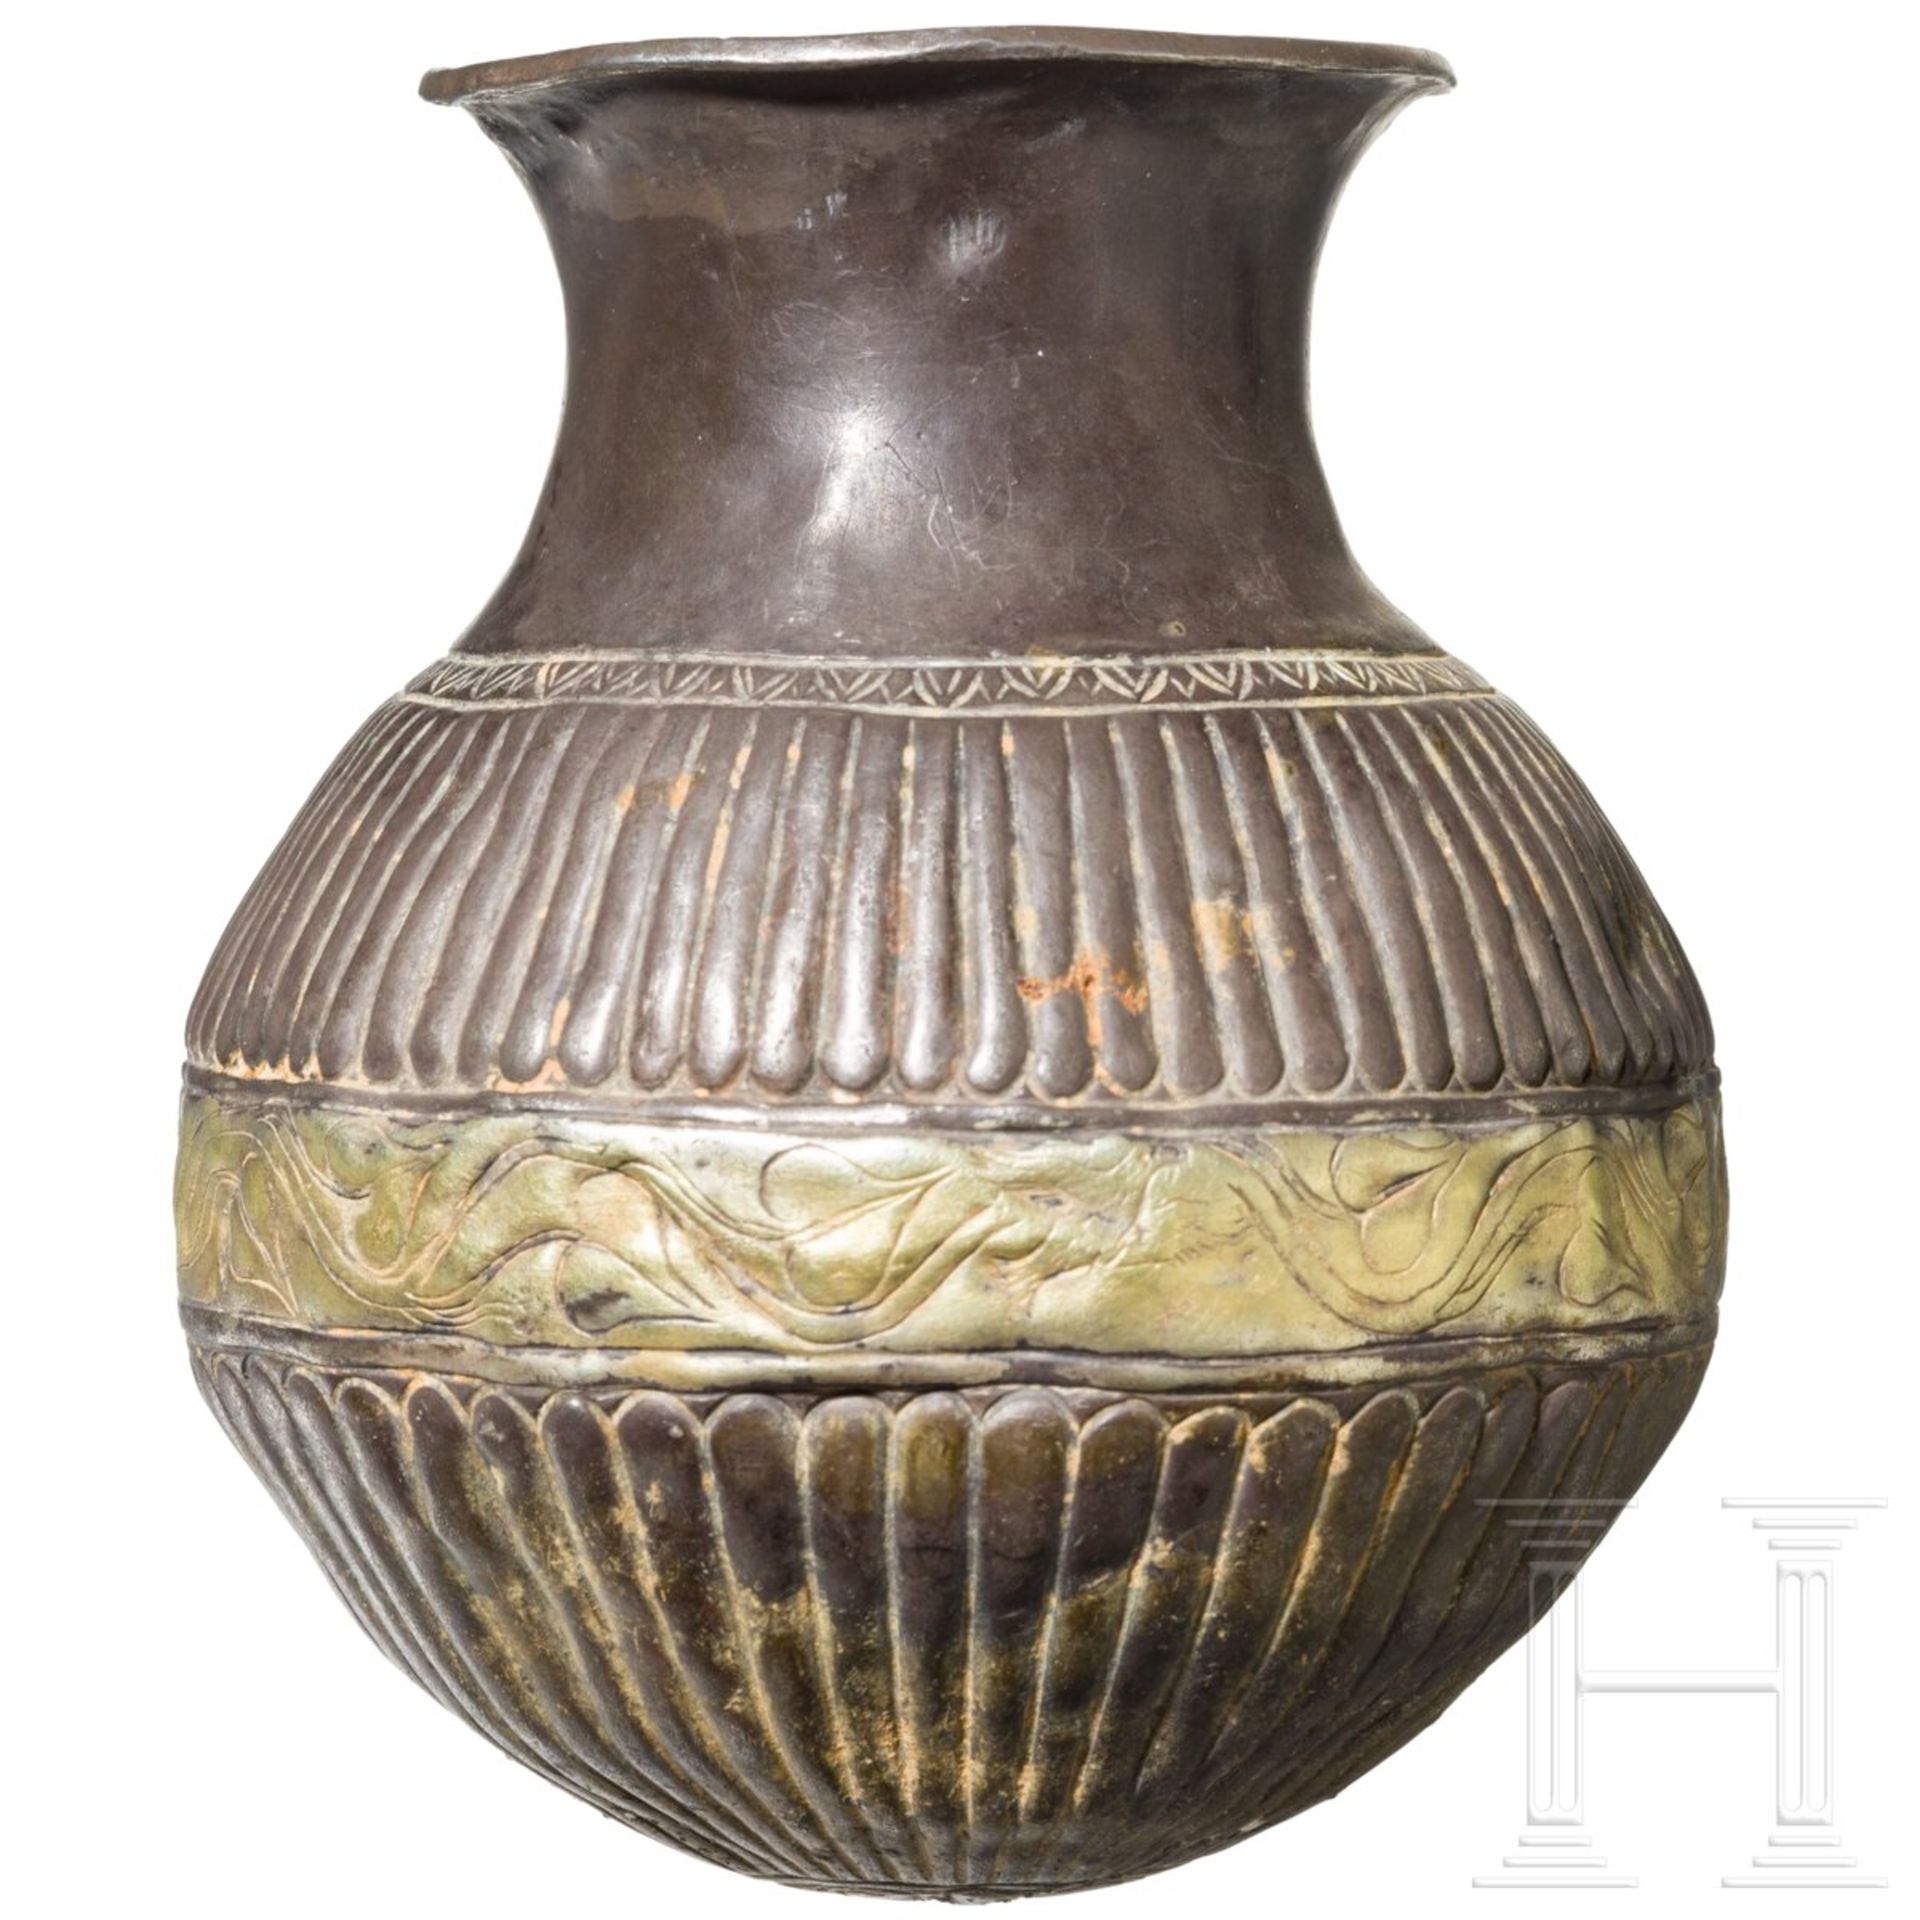 Silbergefäß mit getriebenem und geritztem Dekor, griechisch, 4. Jhdt. v. Chr. - Bild 2 aus 5